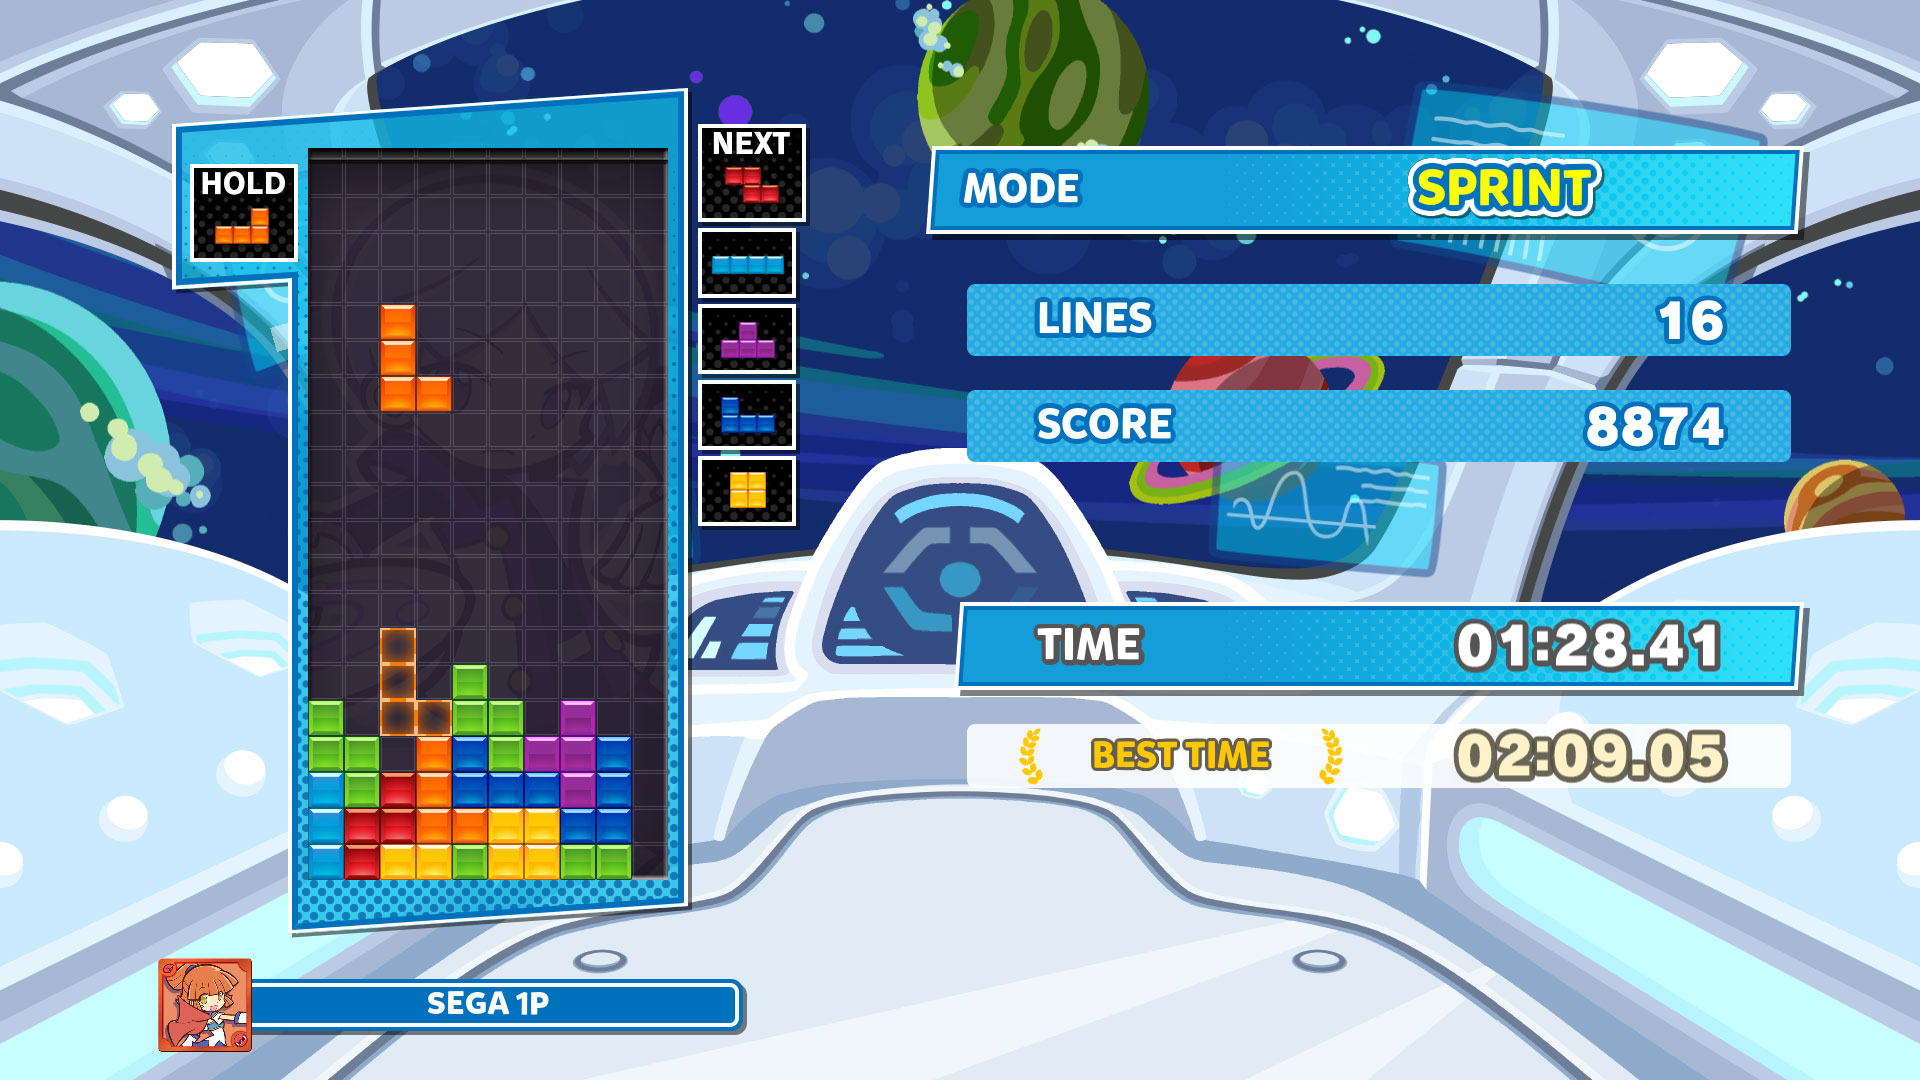 Puyo Puyo Tetris (Multi) é uma mistura de puzzles que nunca saiu